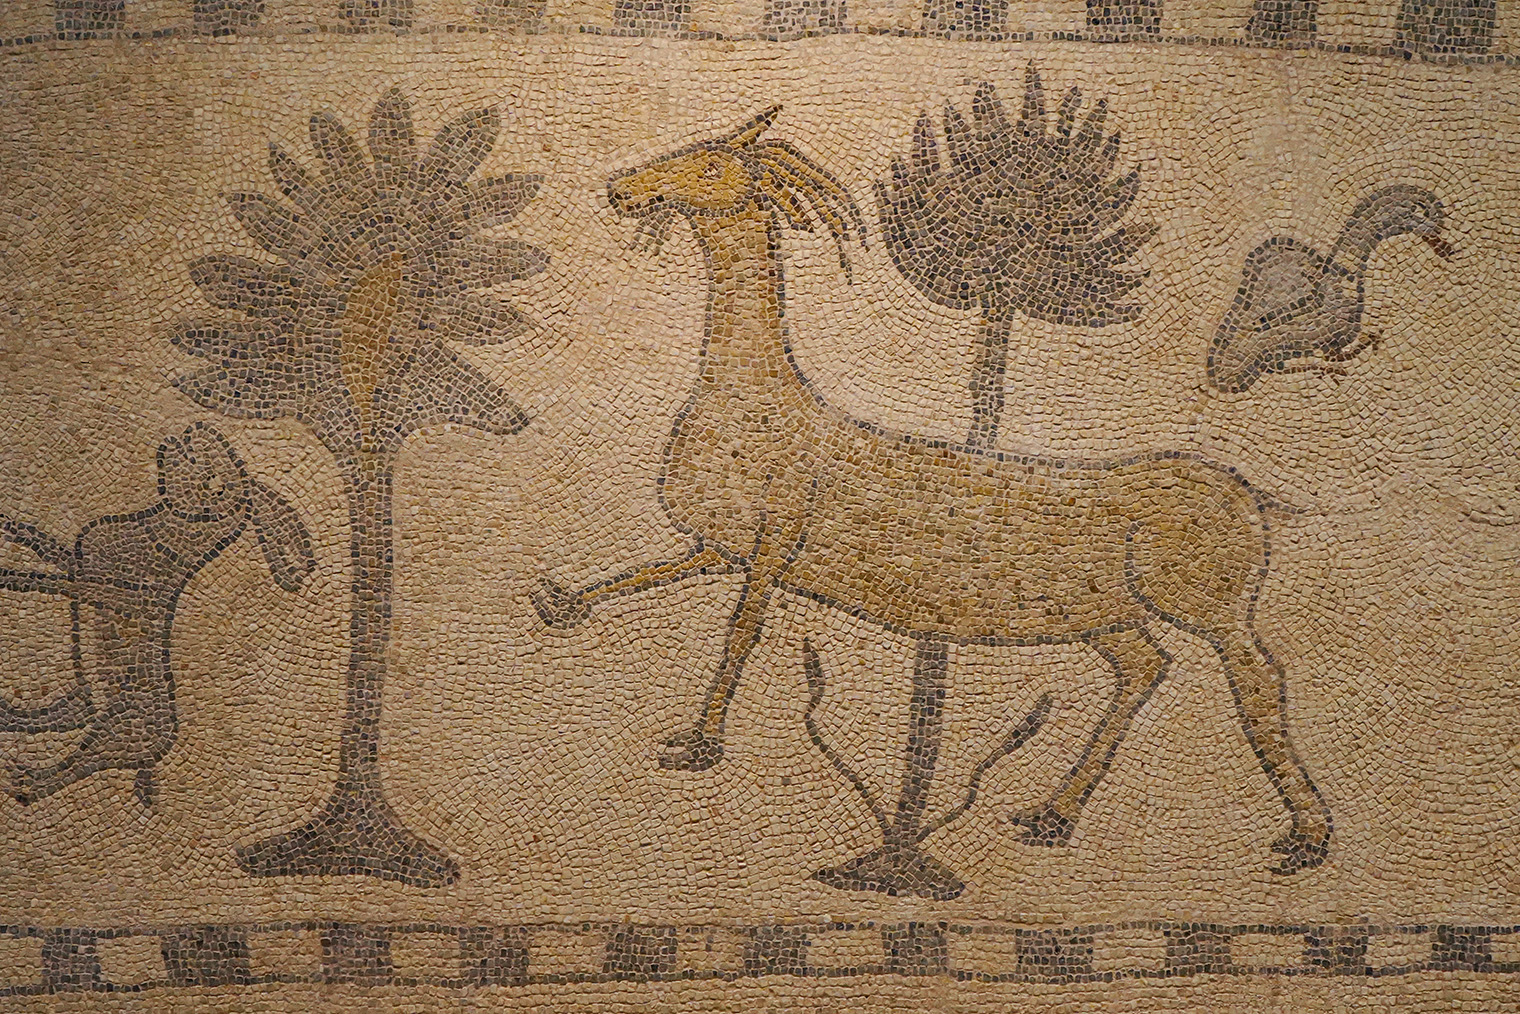 В музее есть не только римская мозаика, но и отдельный зал с мозаикой ранней эпохи. Эти работы выглядят забавно и напоминают детские рисунки